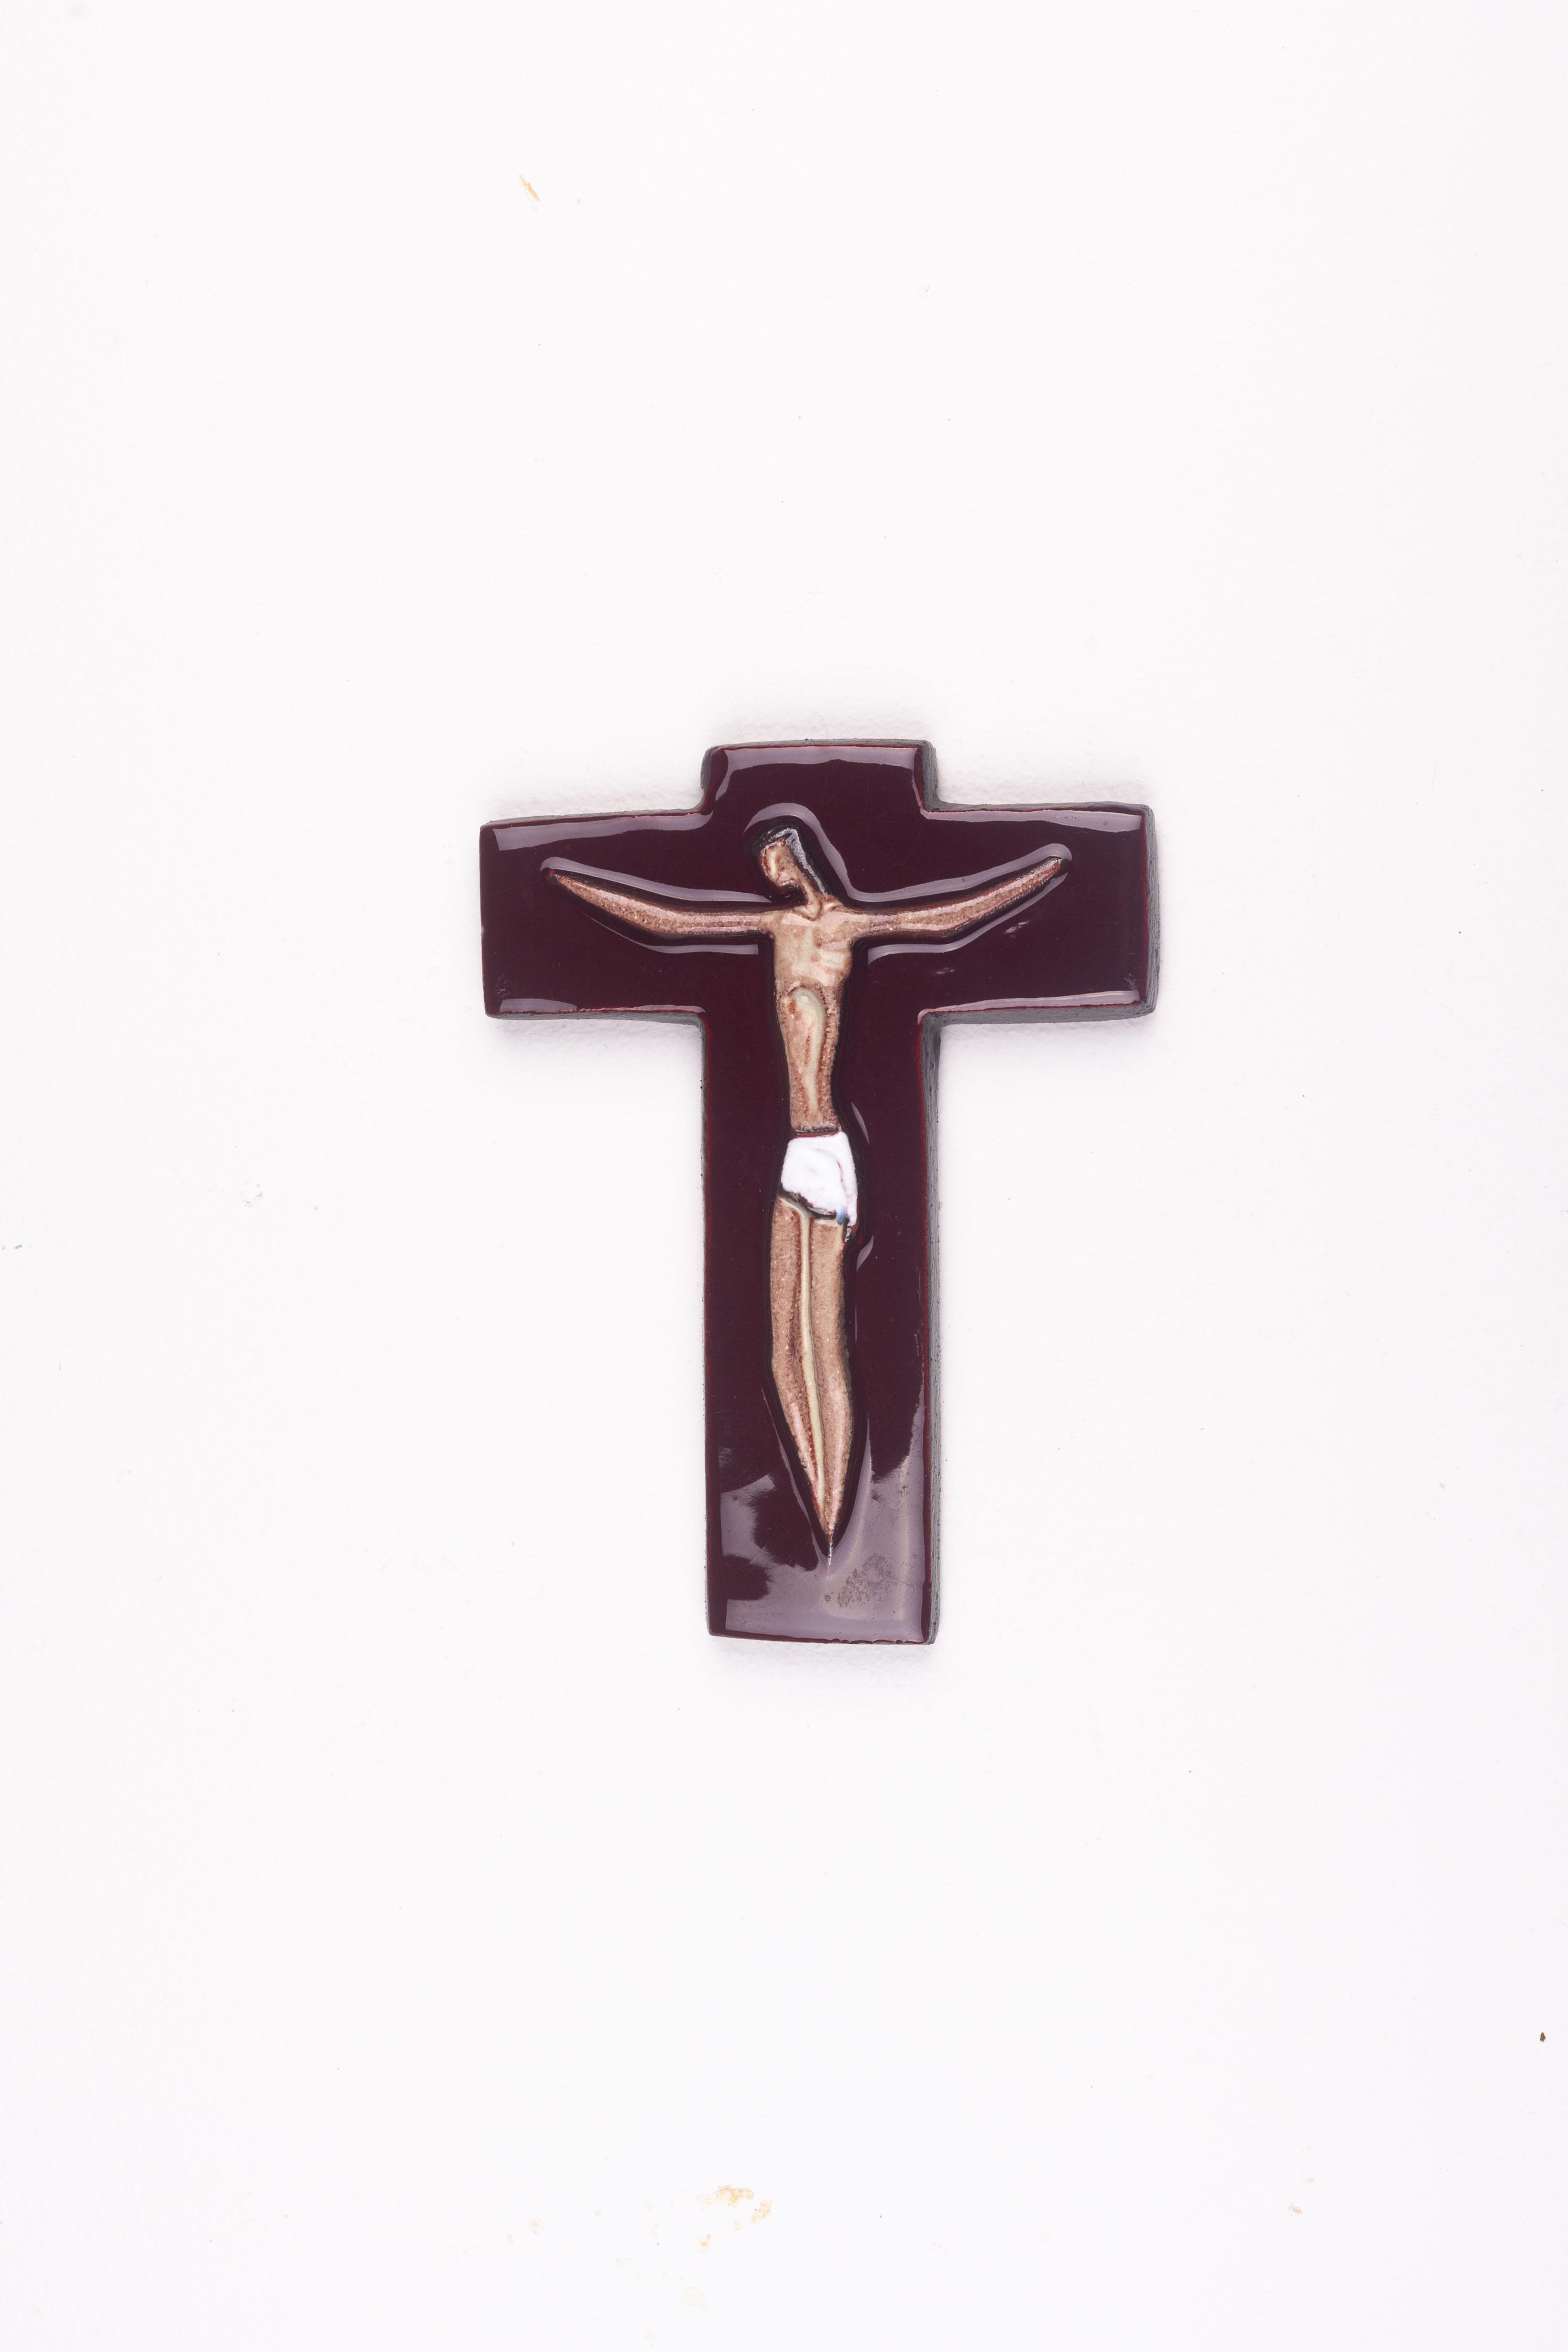 Fabriquée par des artisans flamands, cette croix religieuse du milieu du siècle est ornée d'une glaçure bordeaux brillante et d'une figure de Christ en son centre. Rendu en lignes fluides, le jeu de celles-ci avec la glaçure bordeaux brillante, les